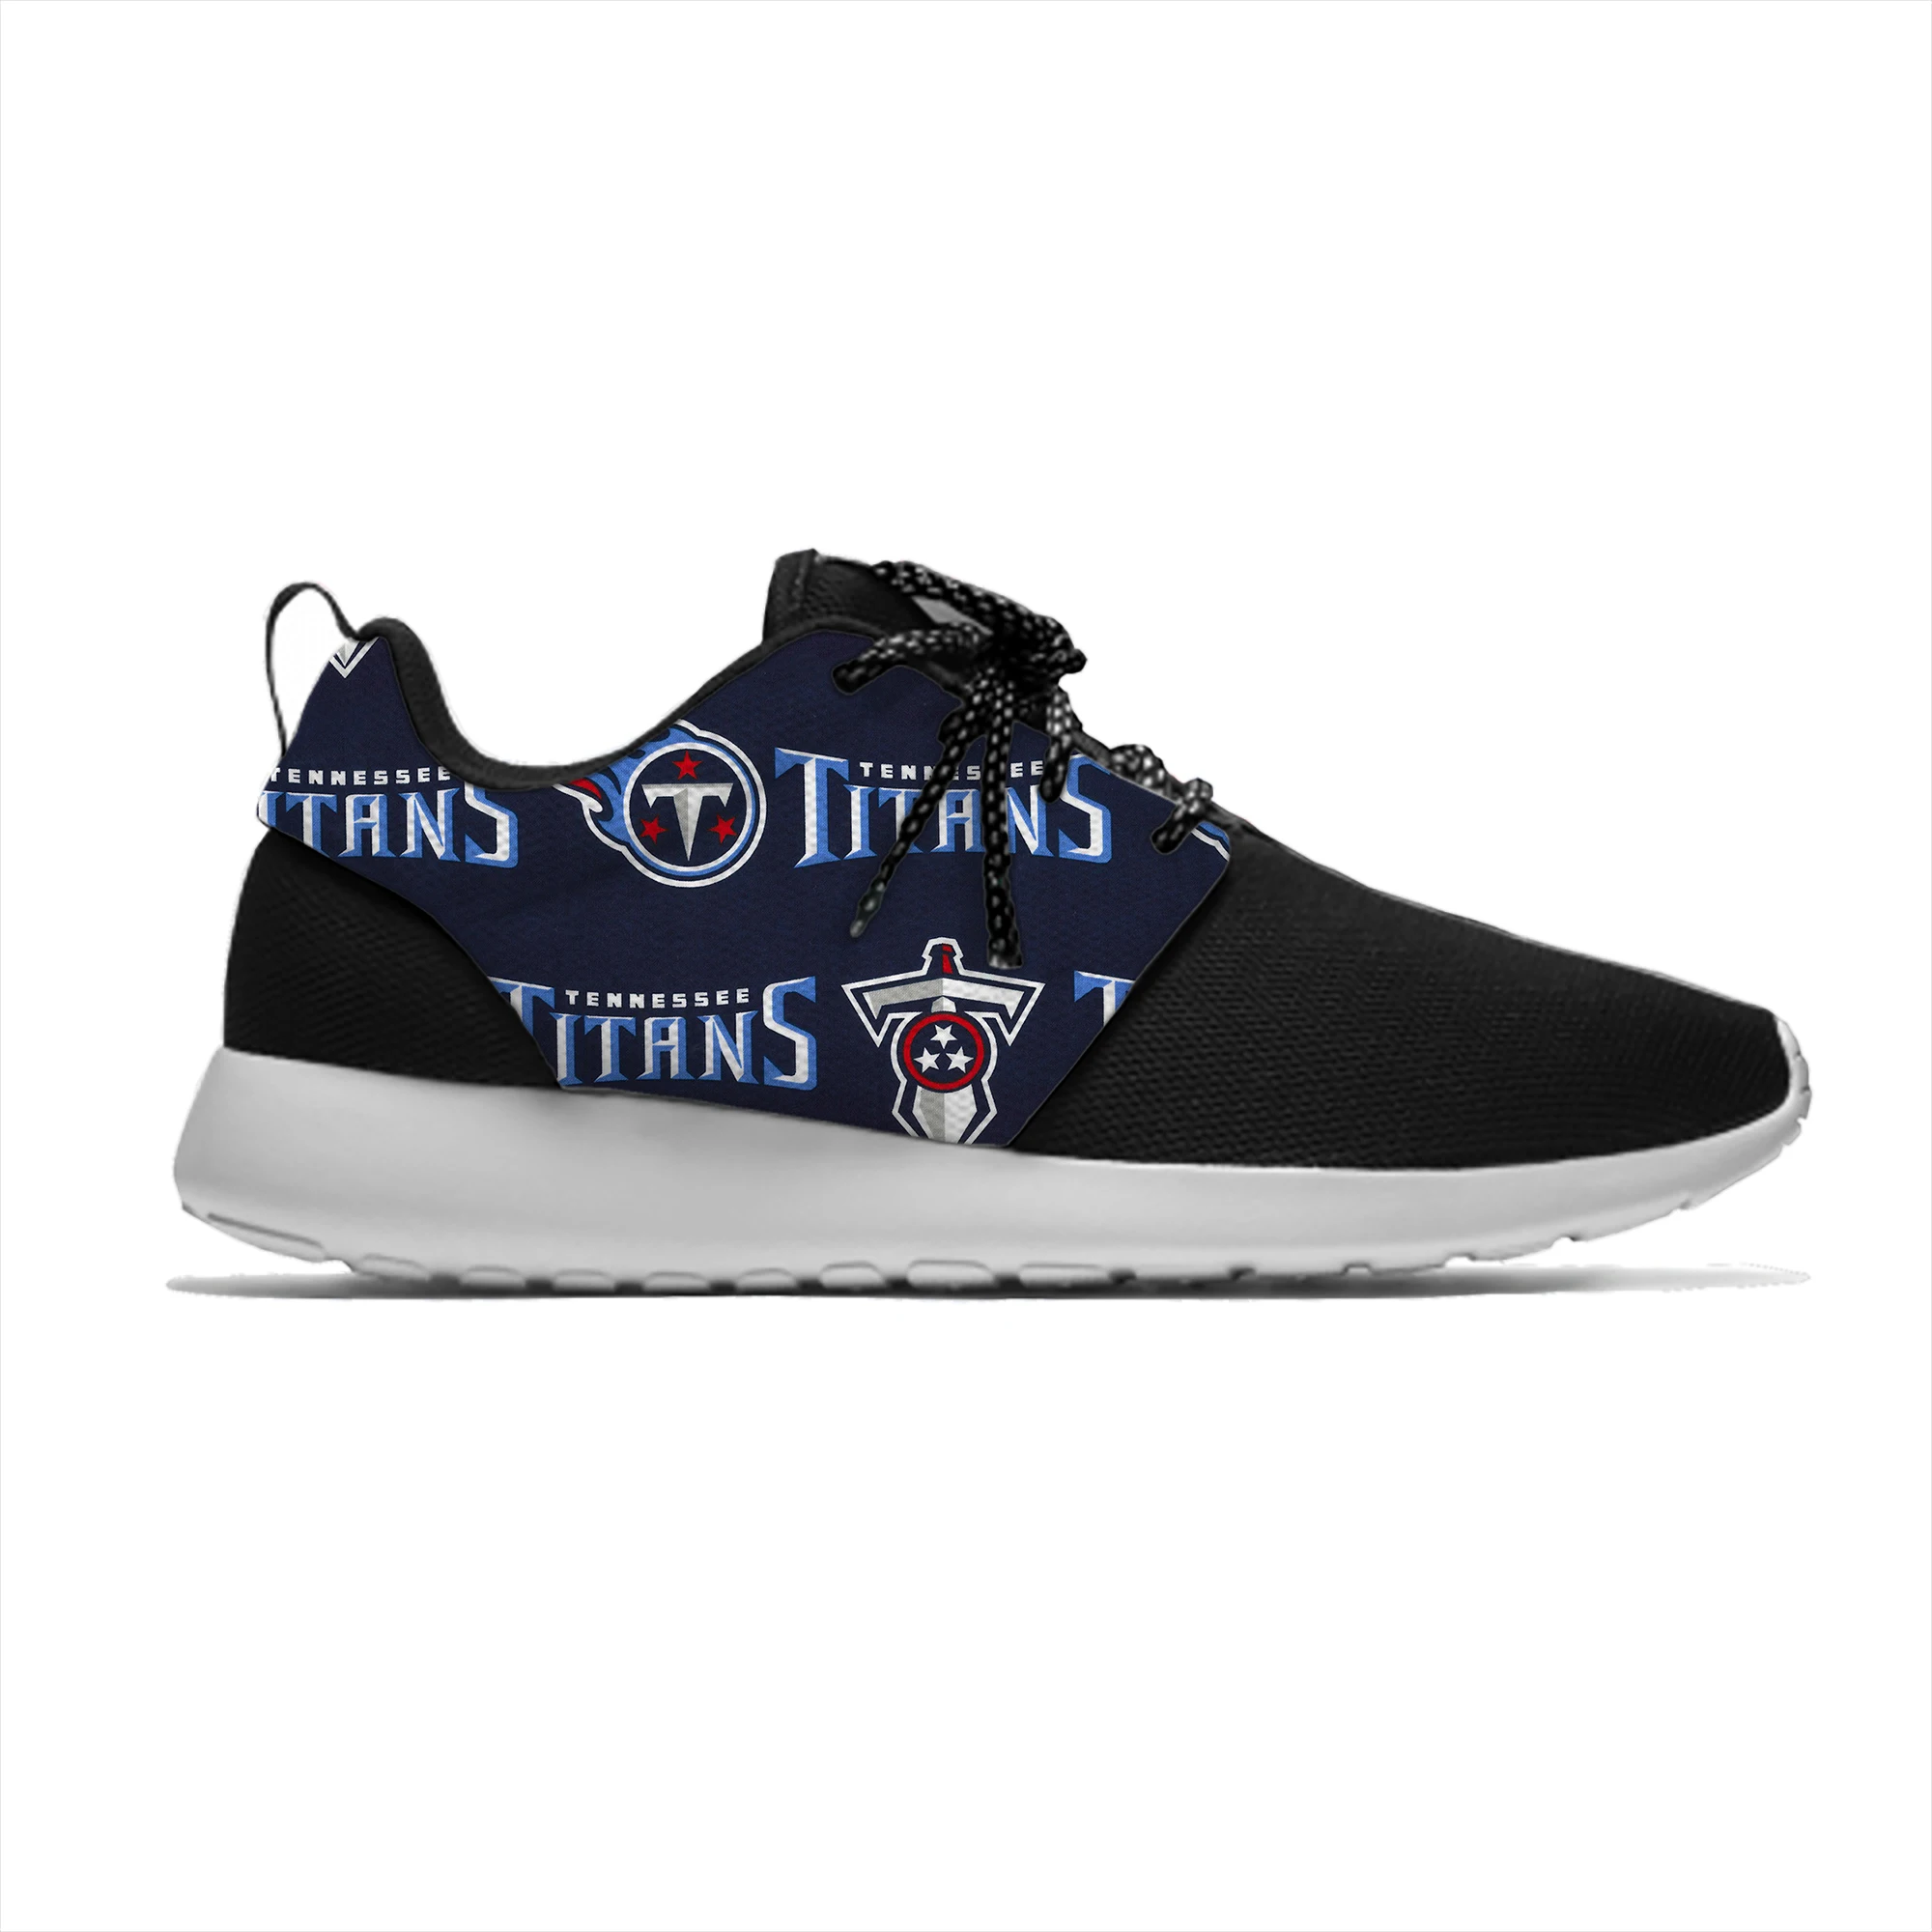 Легкая спортивная обувь Titans повседневные кроссовки из проветриваемой ткани для мужчин и женщин Tennessee футбольные вентиляторы Беговая сеточная обувь